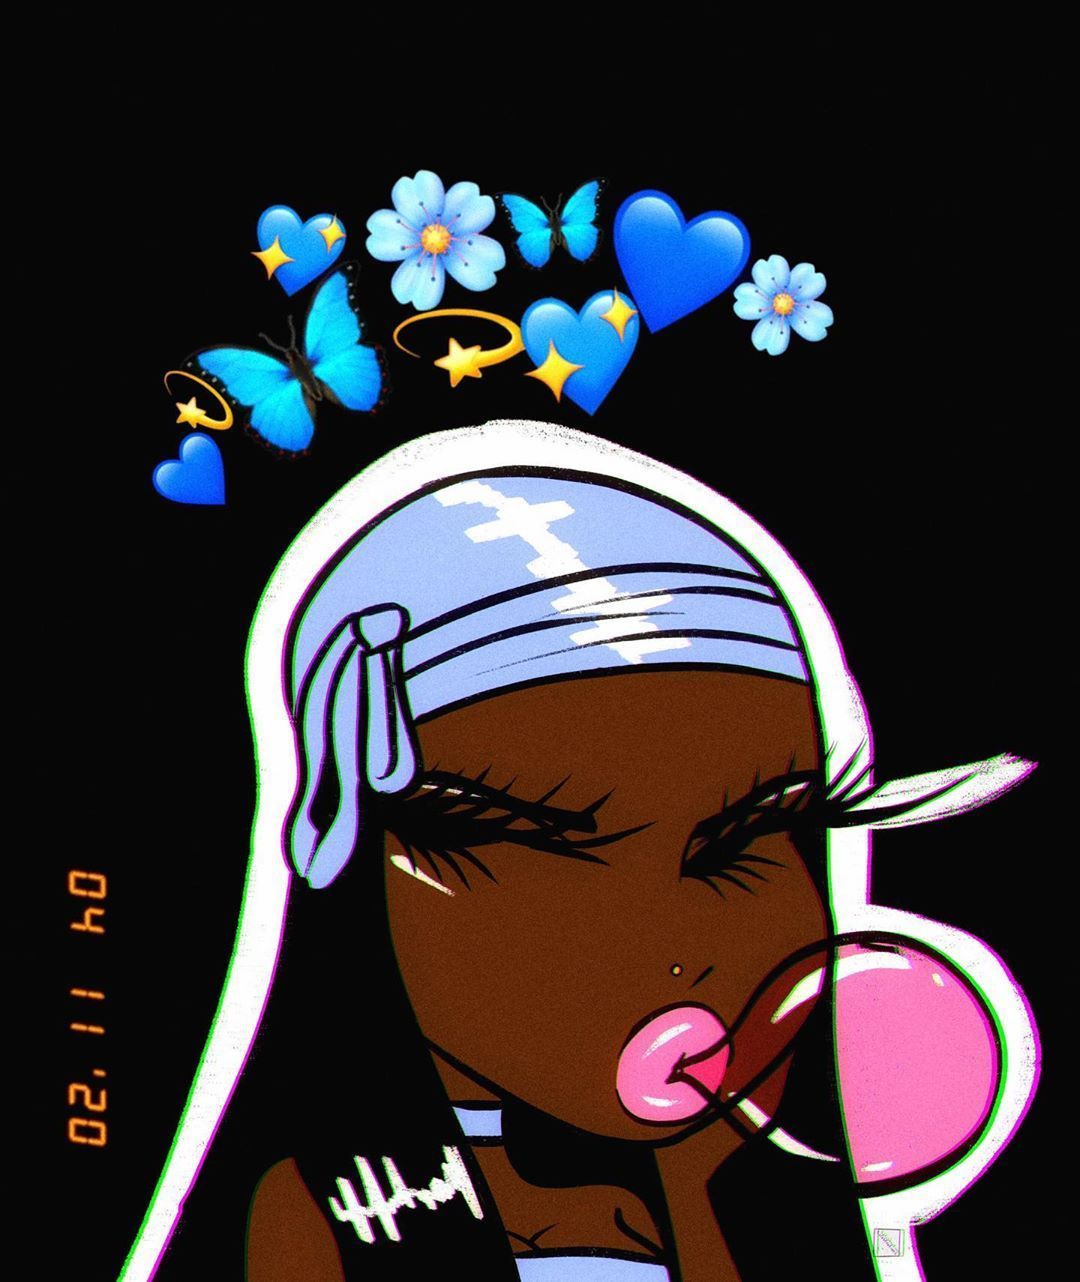 pics Wallpapers Baddie Mood Cartoon Aesthetic black girl baddie wallpapers.